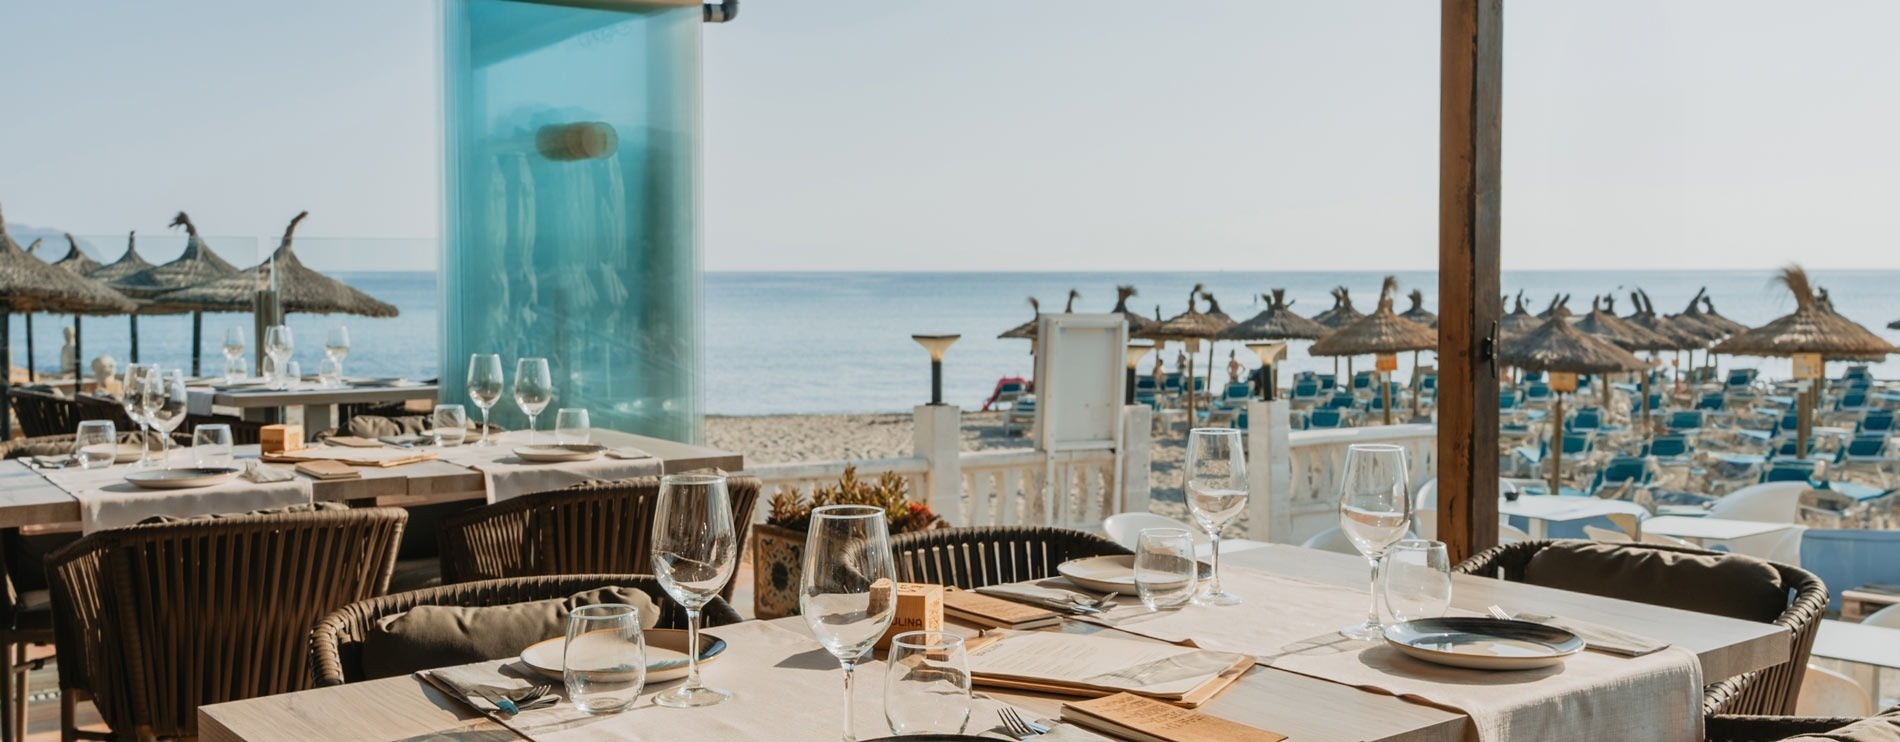 ein Restaurant mit Blick auf den Ozean und einem Tisch mit Gläsern und Tellern